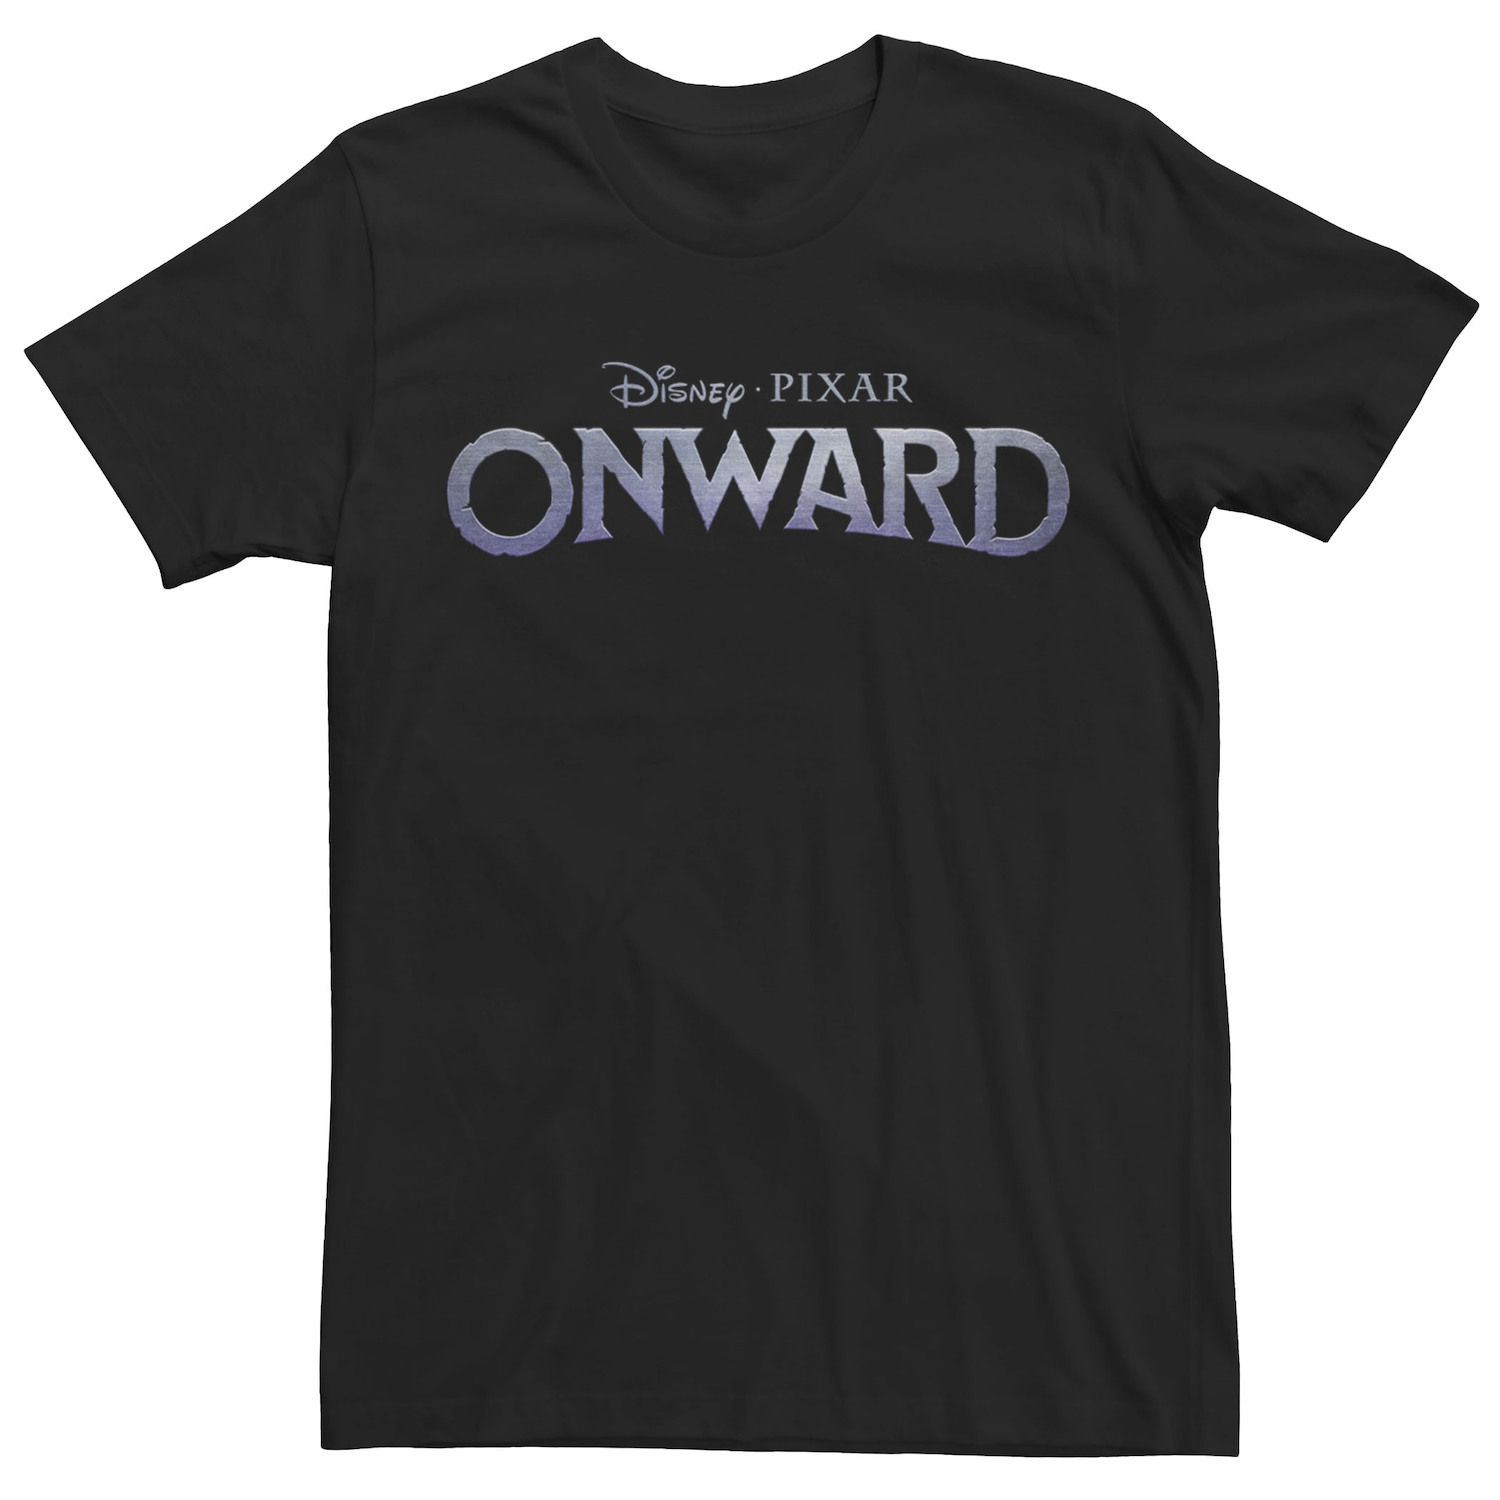 Мужская футболка с простым логотипом Onward Disney / Pixar